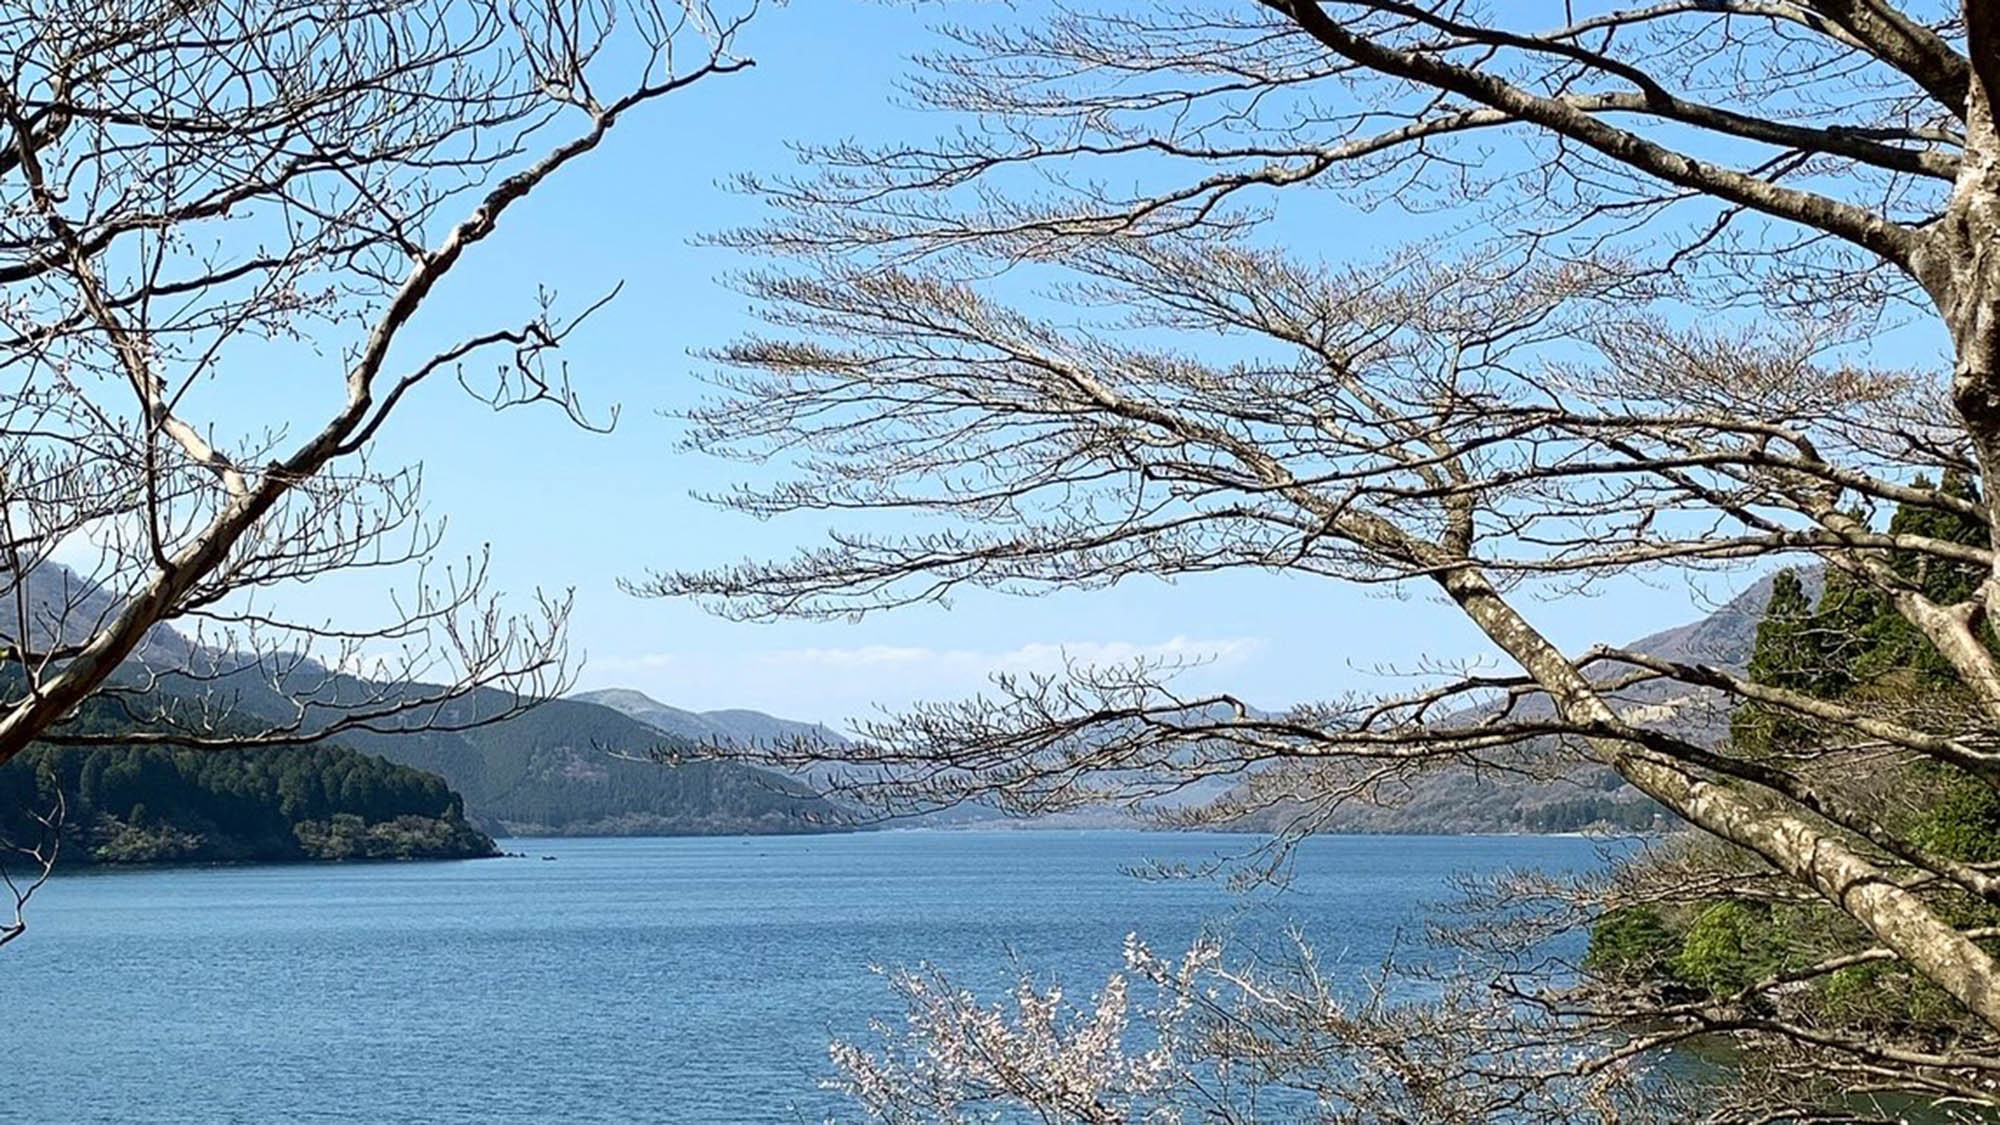 ・【芦ノ湖】四季折々の芦ノ湖の景色をお楽しみいただけます